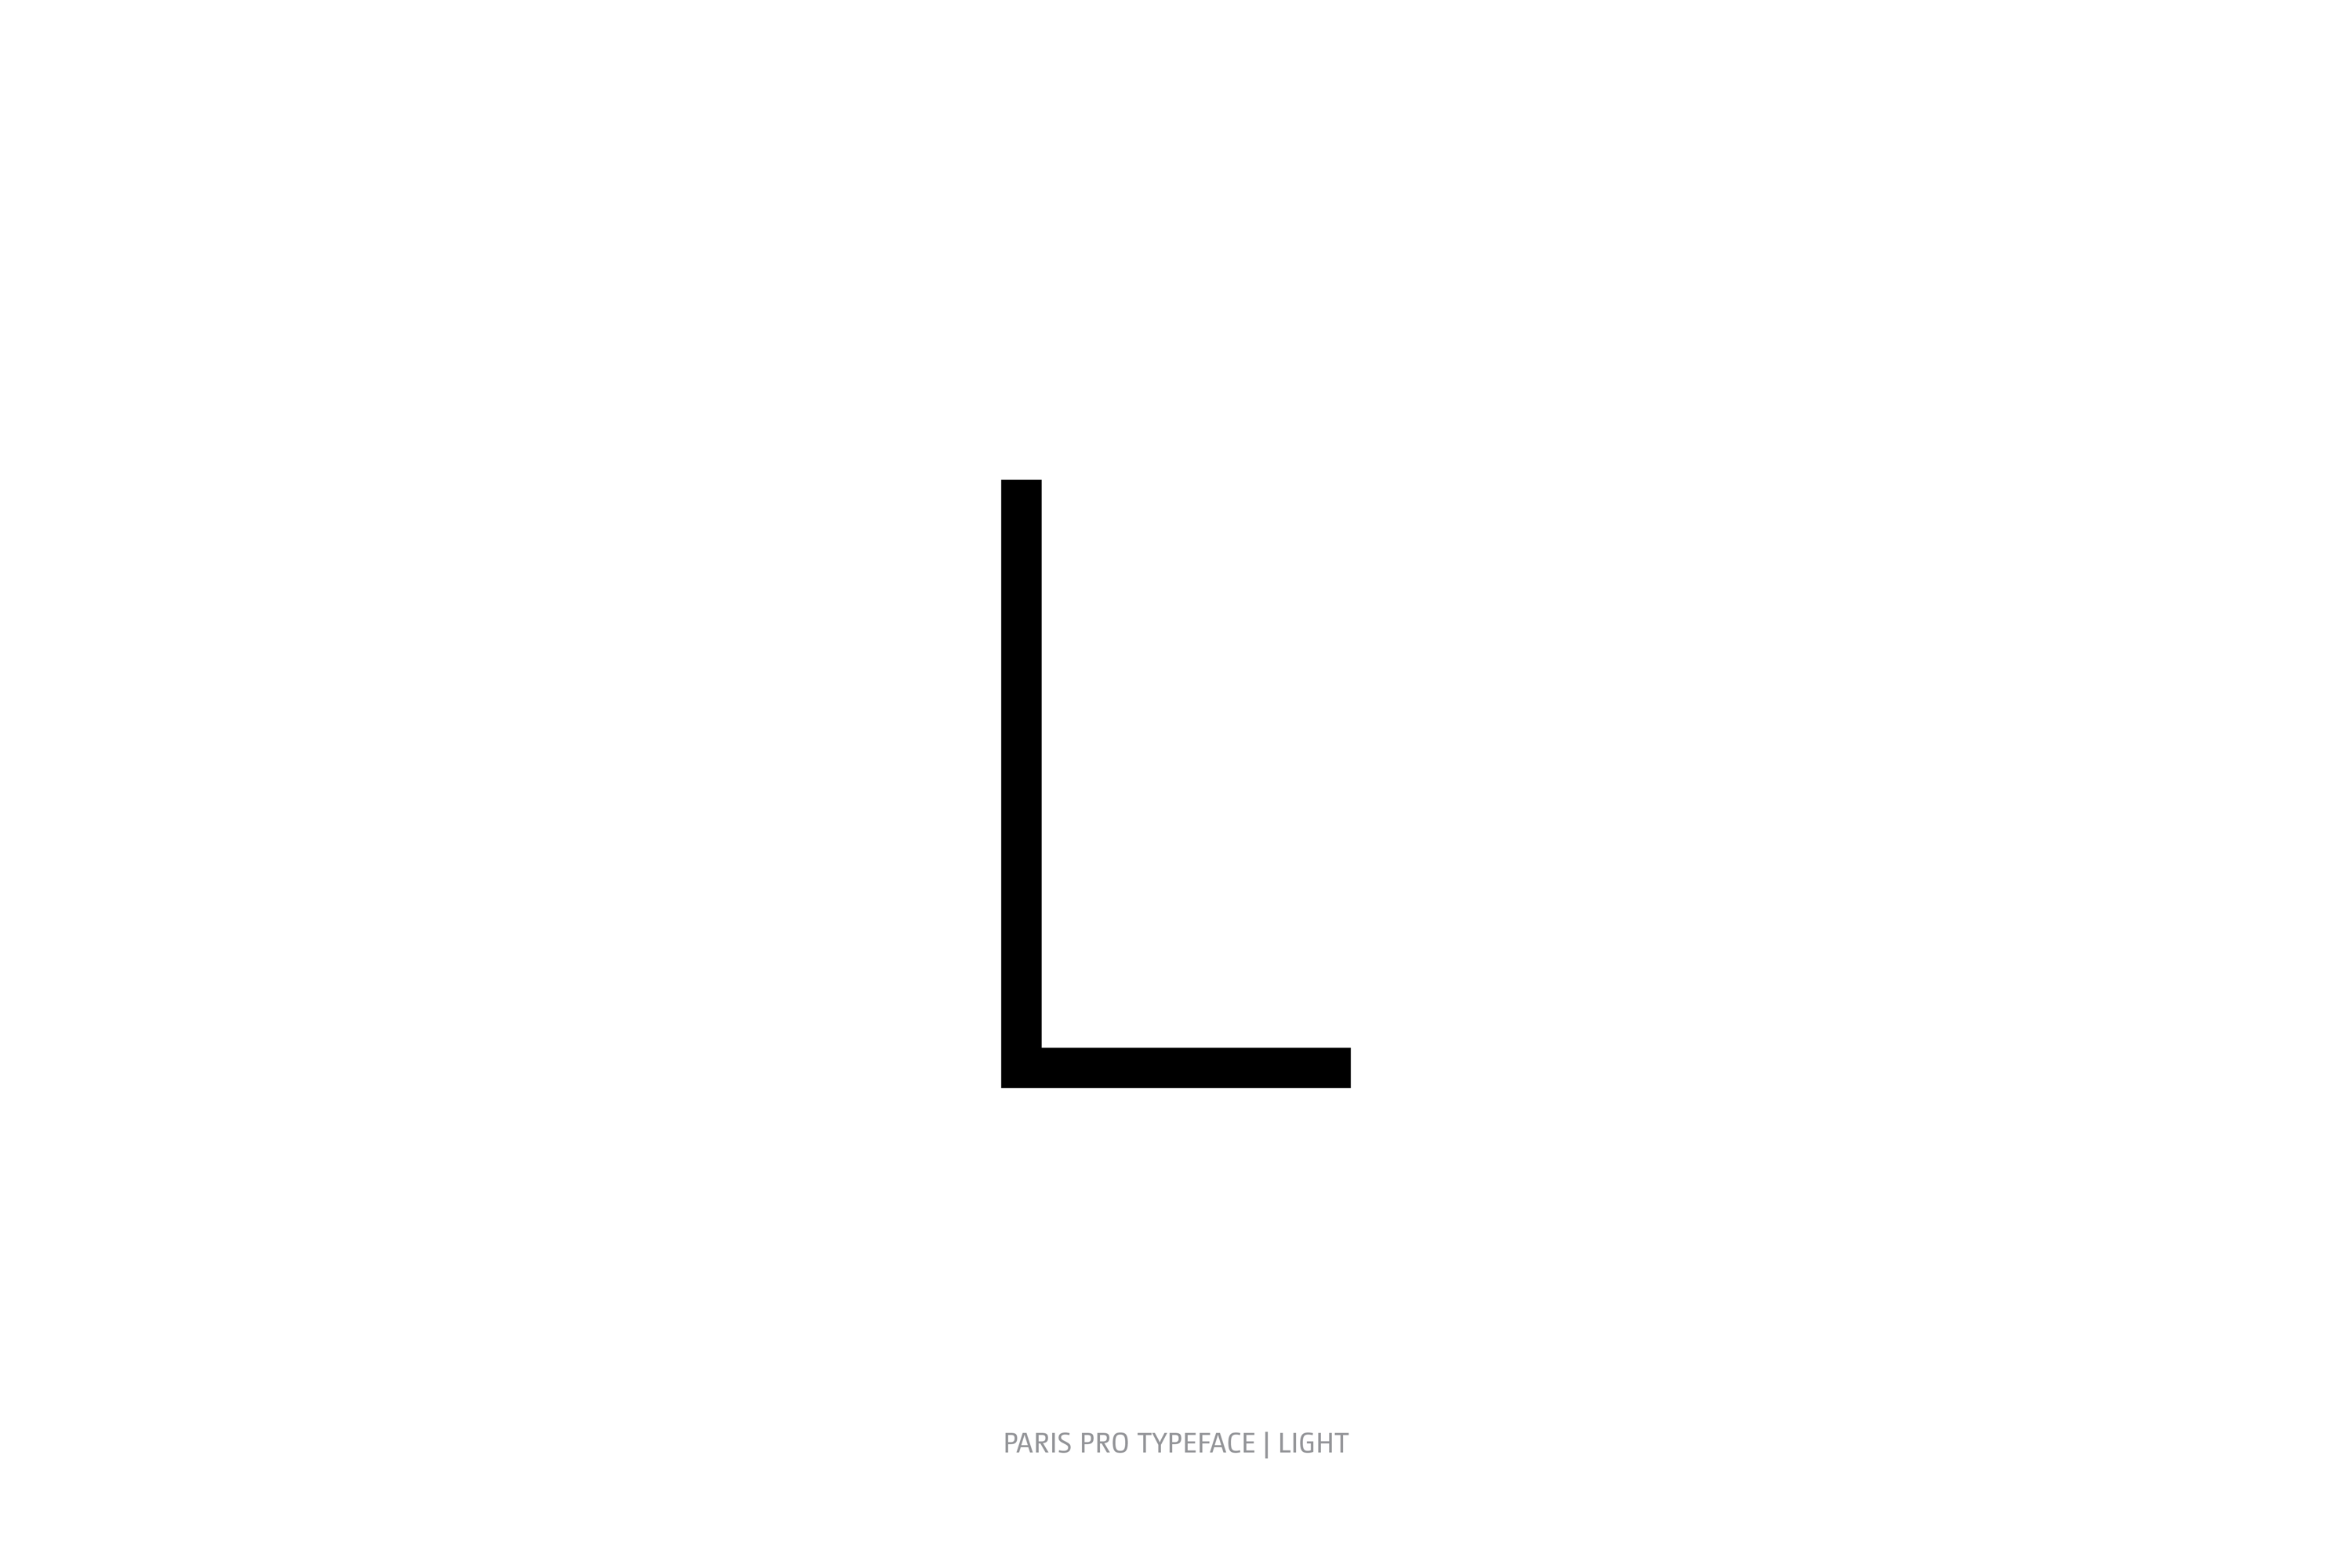 Paris Pro Typeface Light Style L